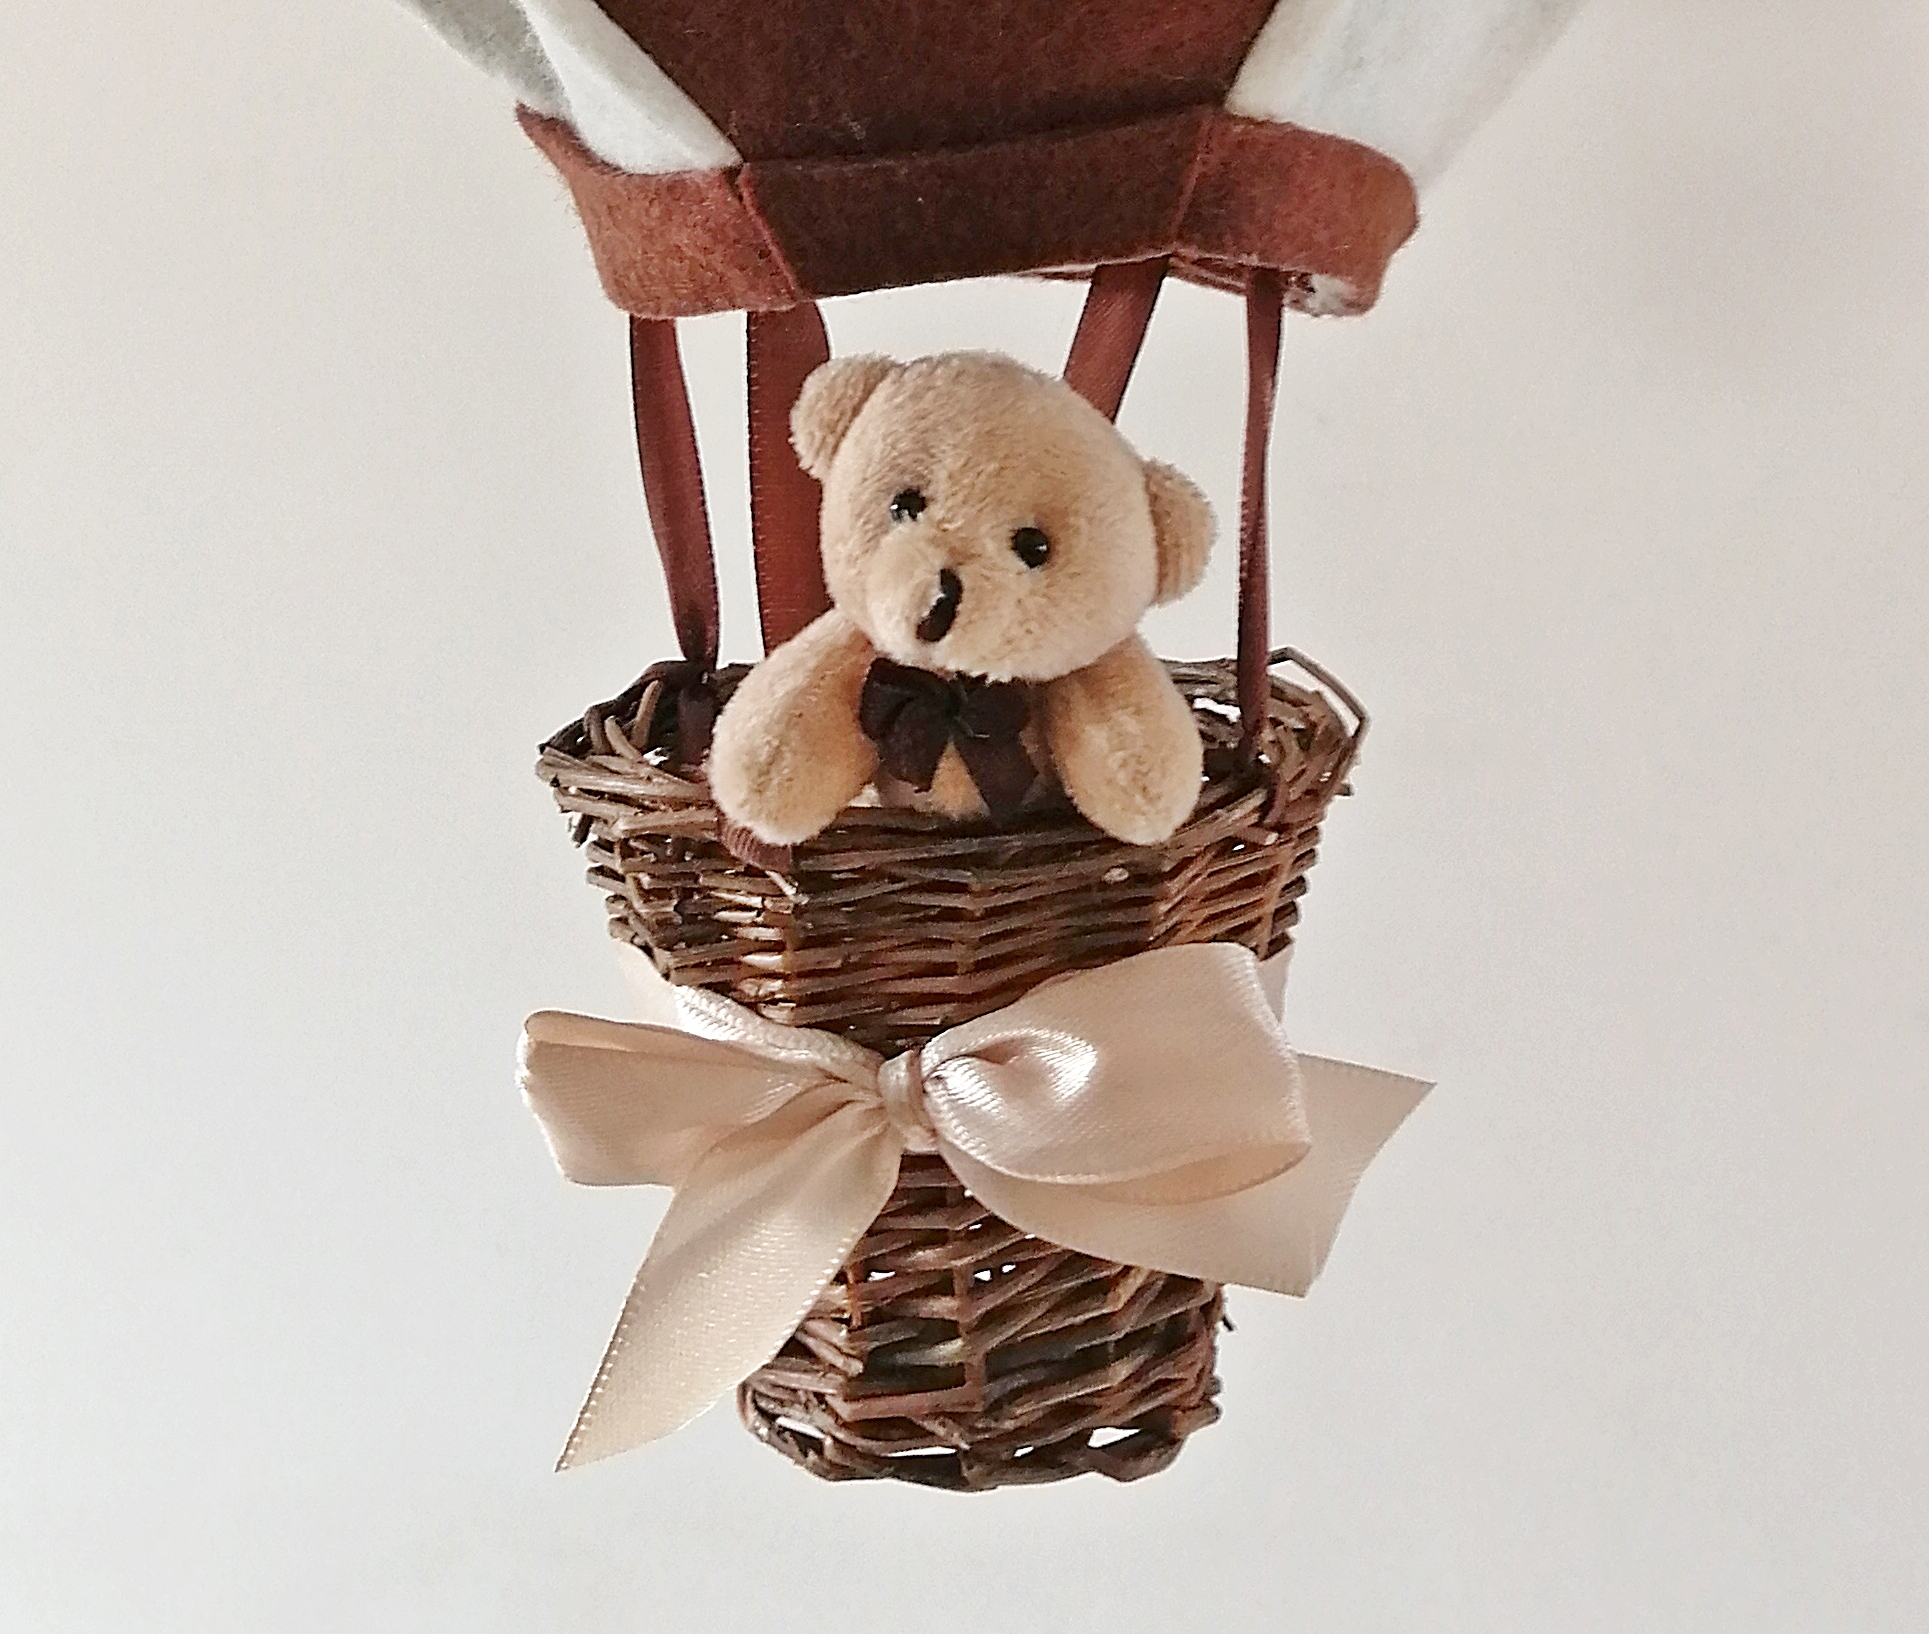 montgolfiere-decoration-enfant-bebe-suspension-mobile-marron-choclat-beige-mixte-chambre